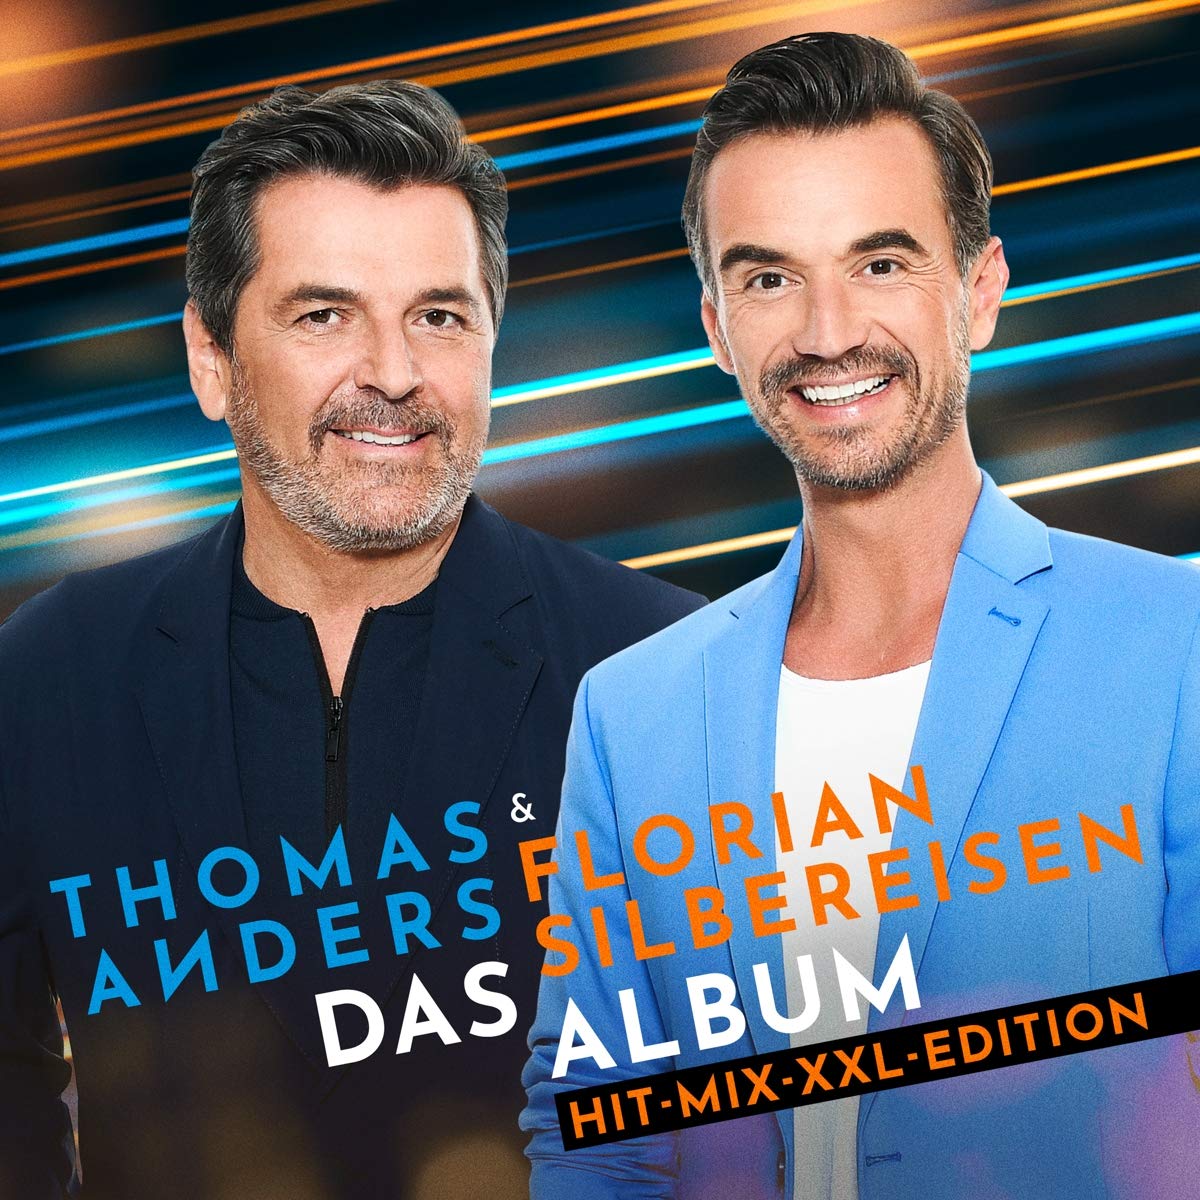 Thomas Anders & Florian Silbereisen - Das Album (Hit-Mix-XXL-Edition) (2021)